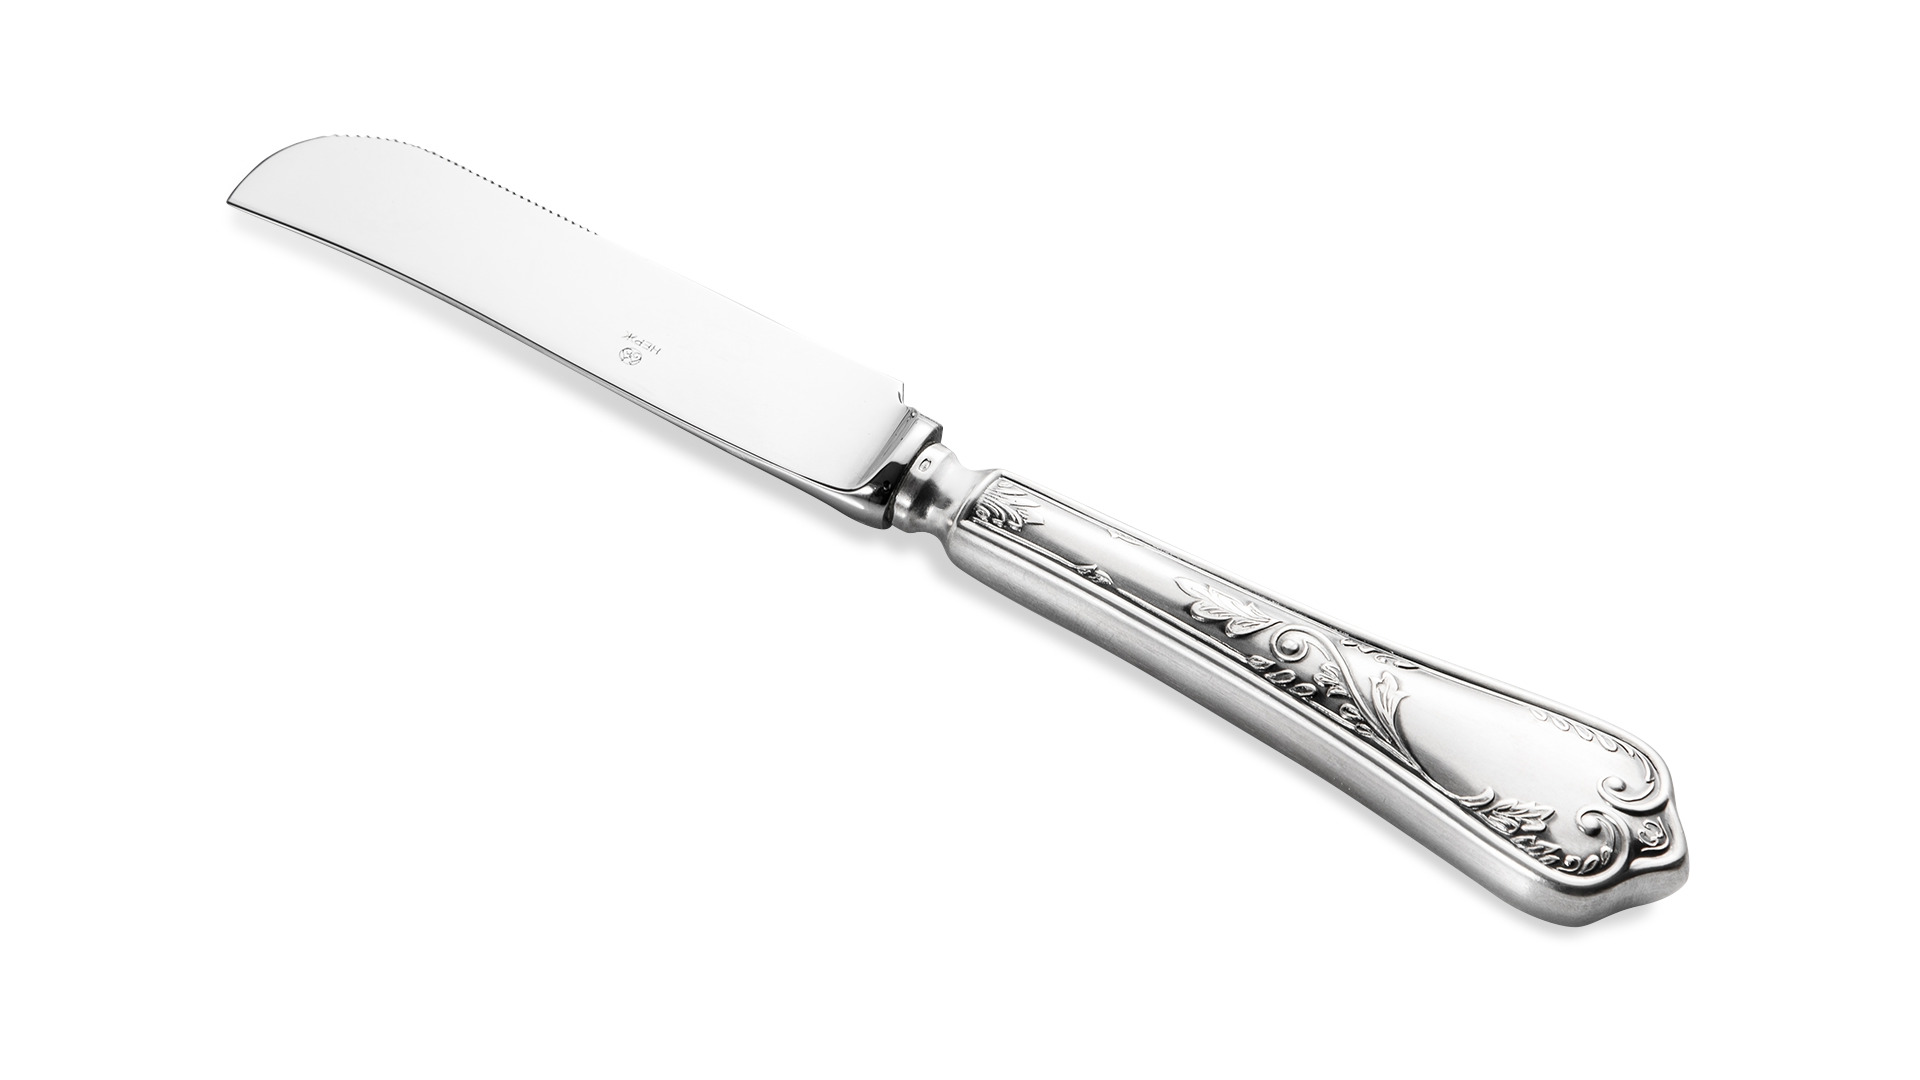 Нож для пиццы Мстерский ювелир 41,5 г, серебро 925